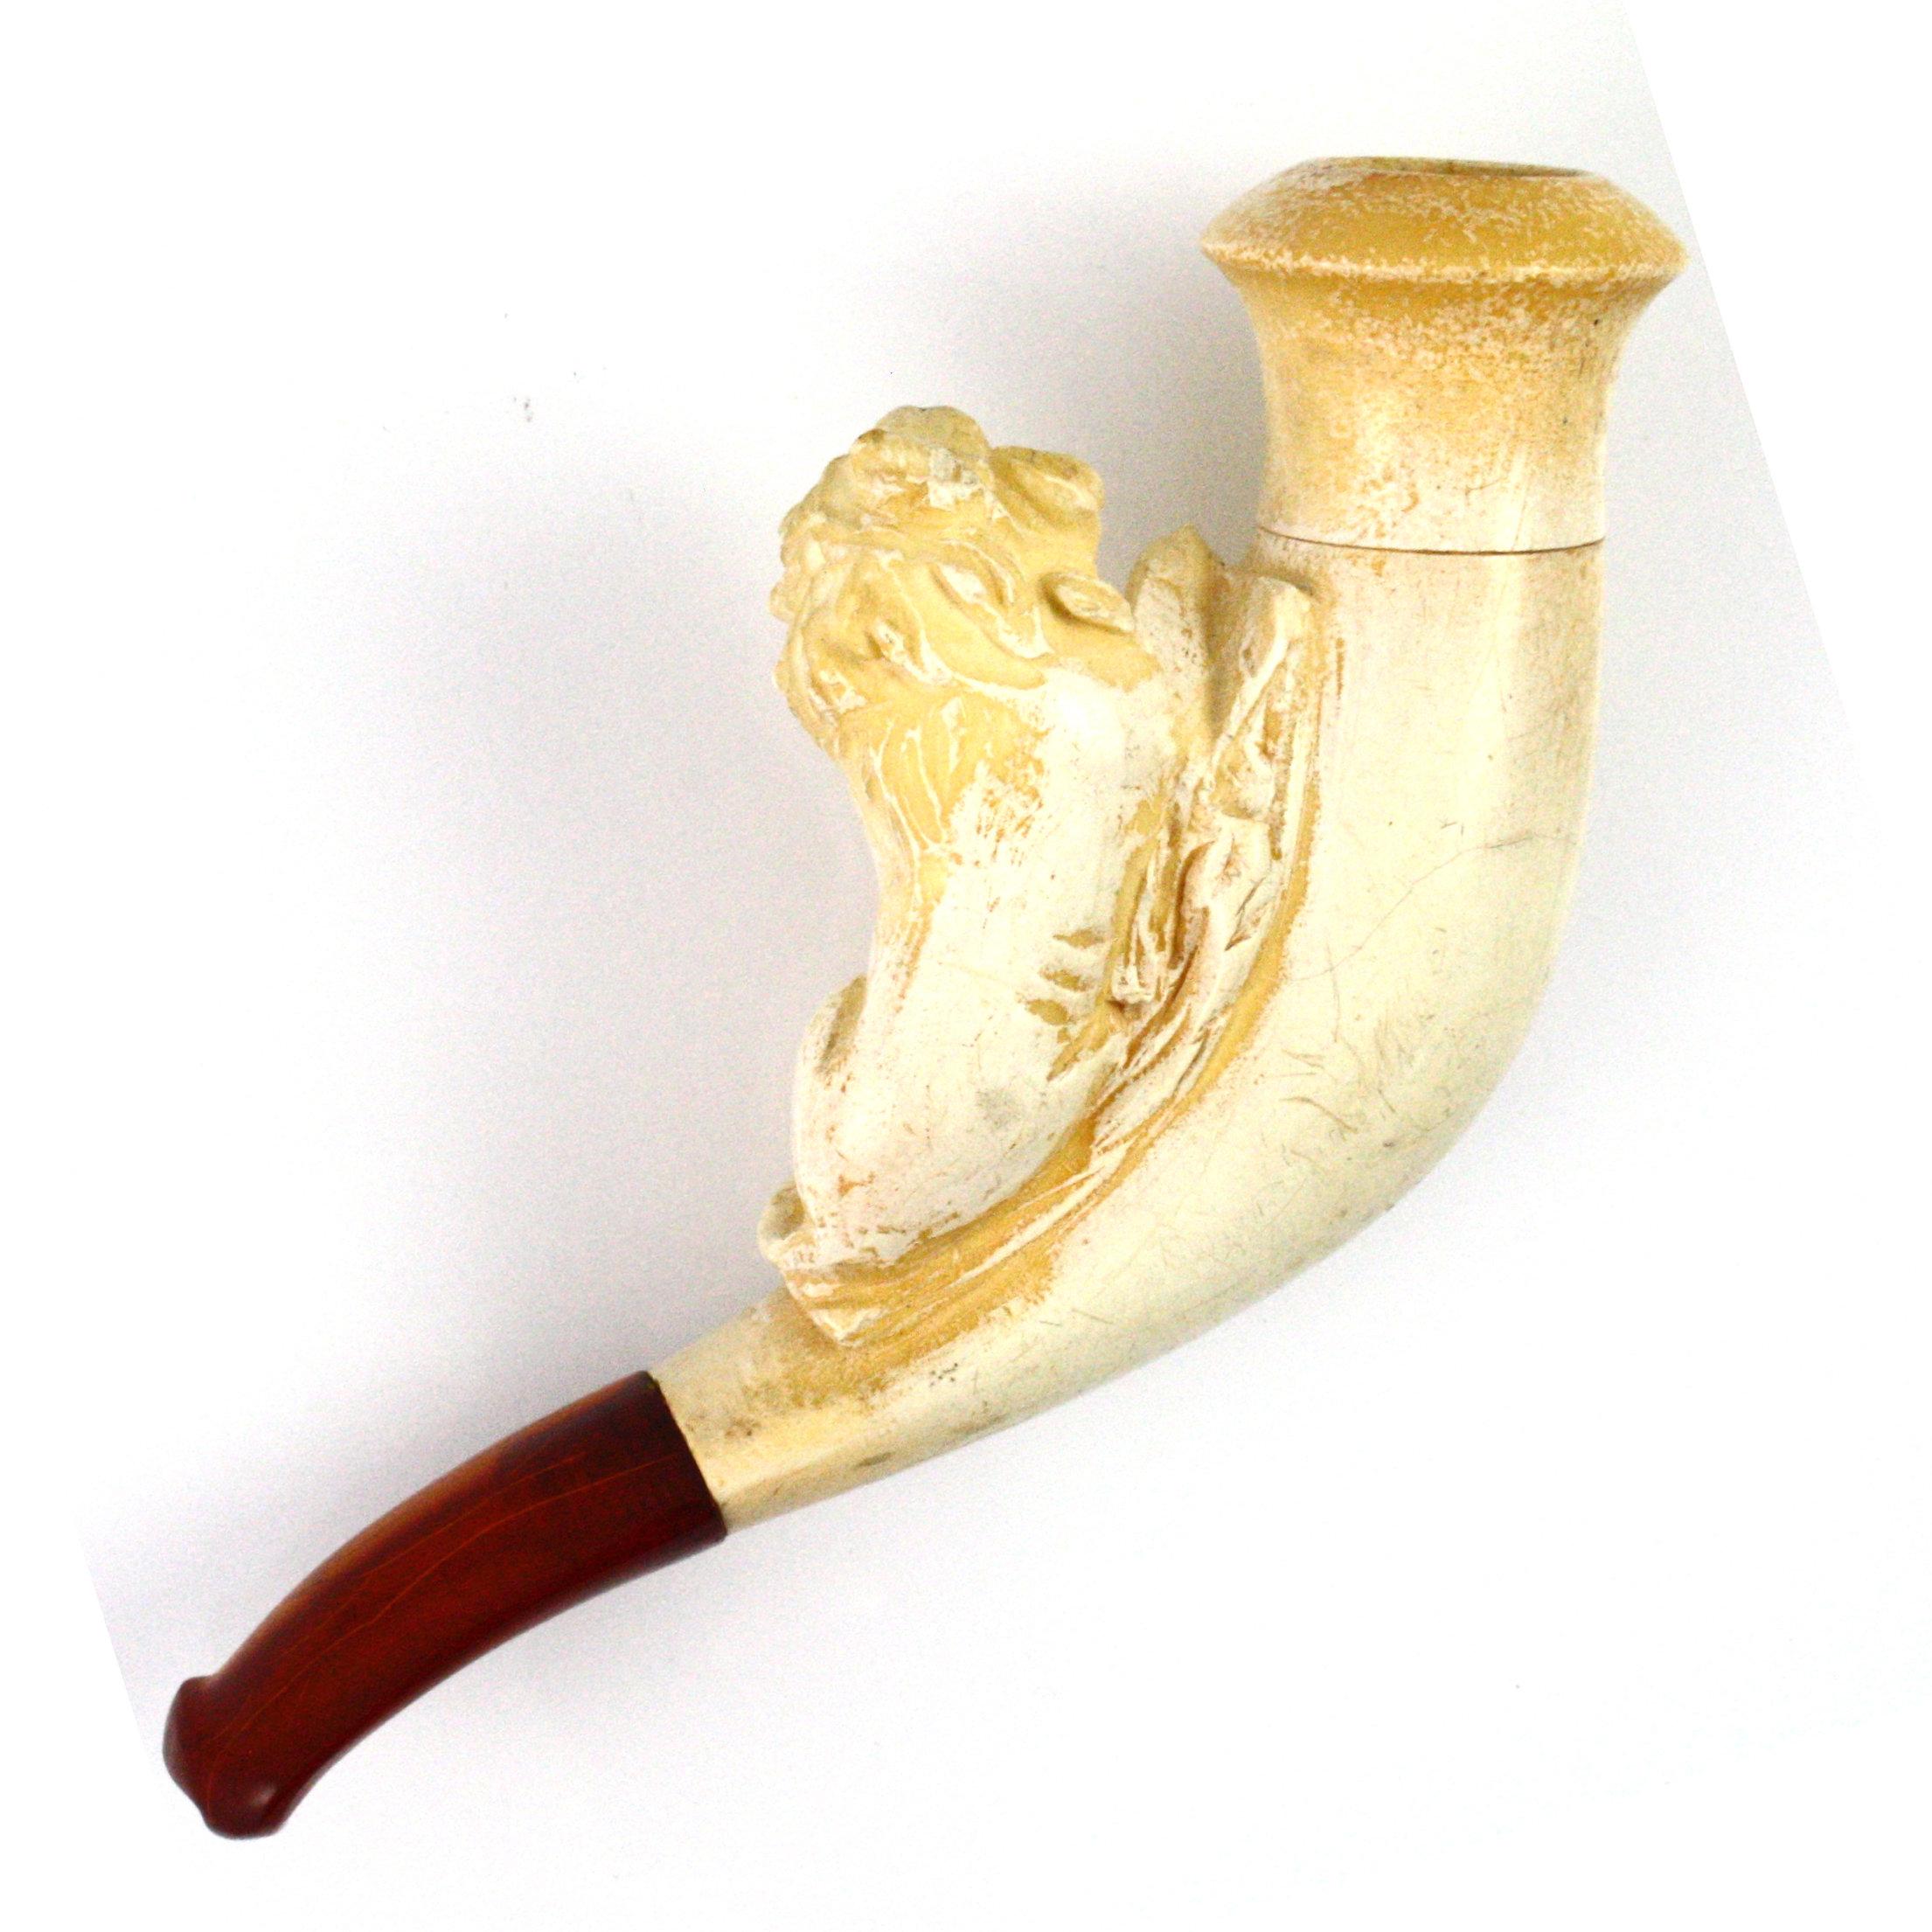 Authentic vintage Meerschaum lion pipe